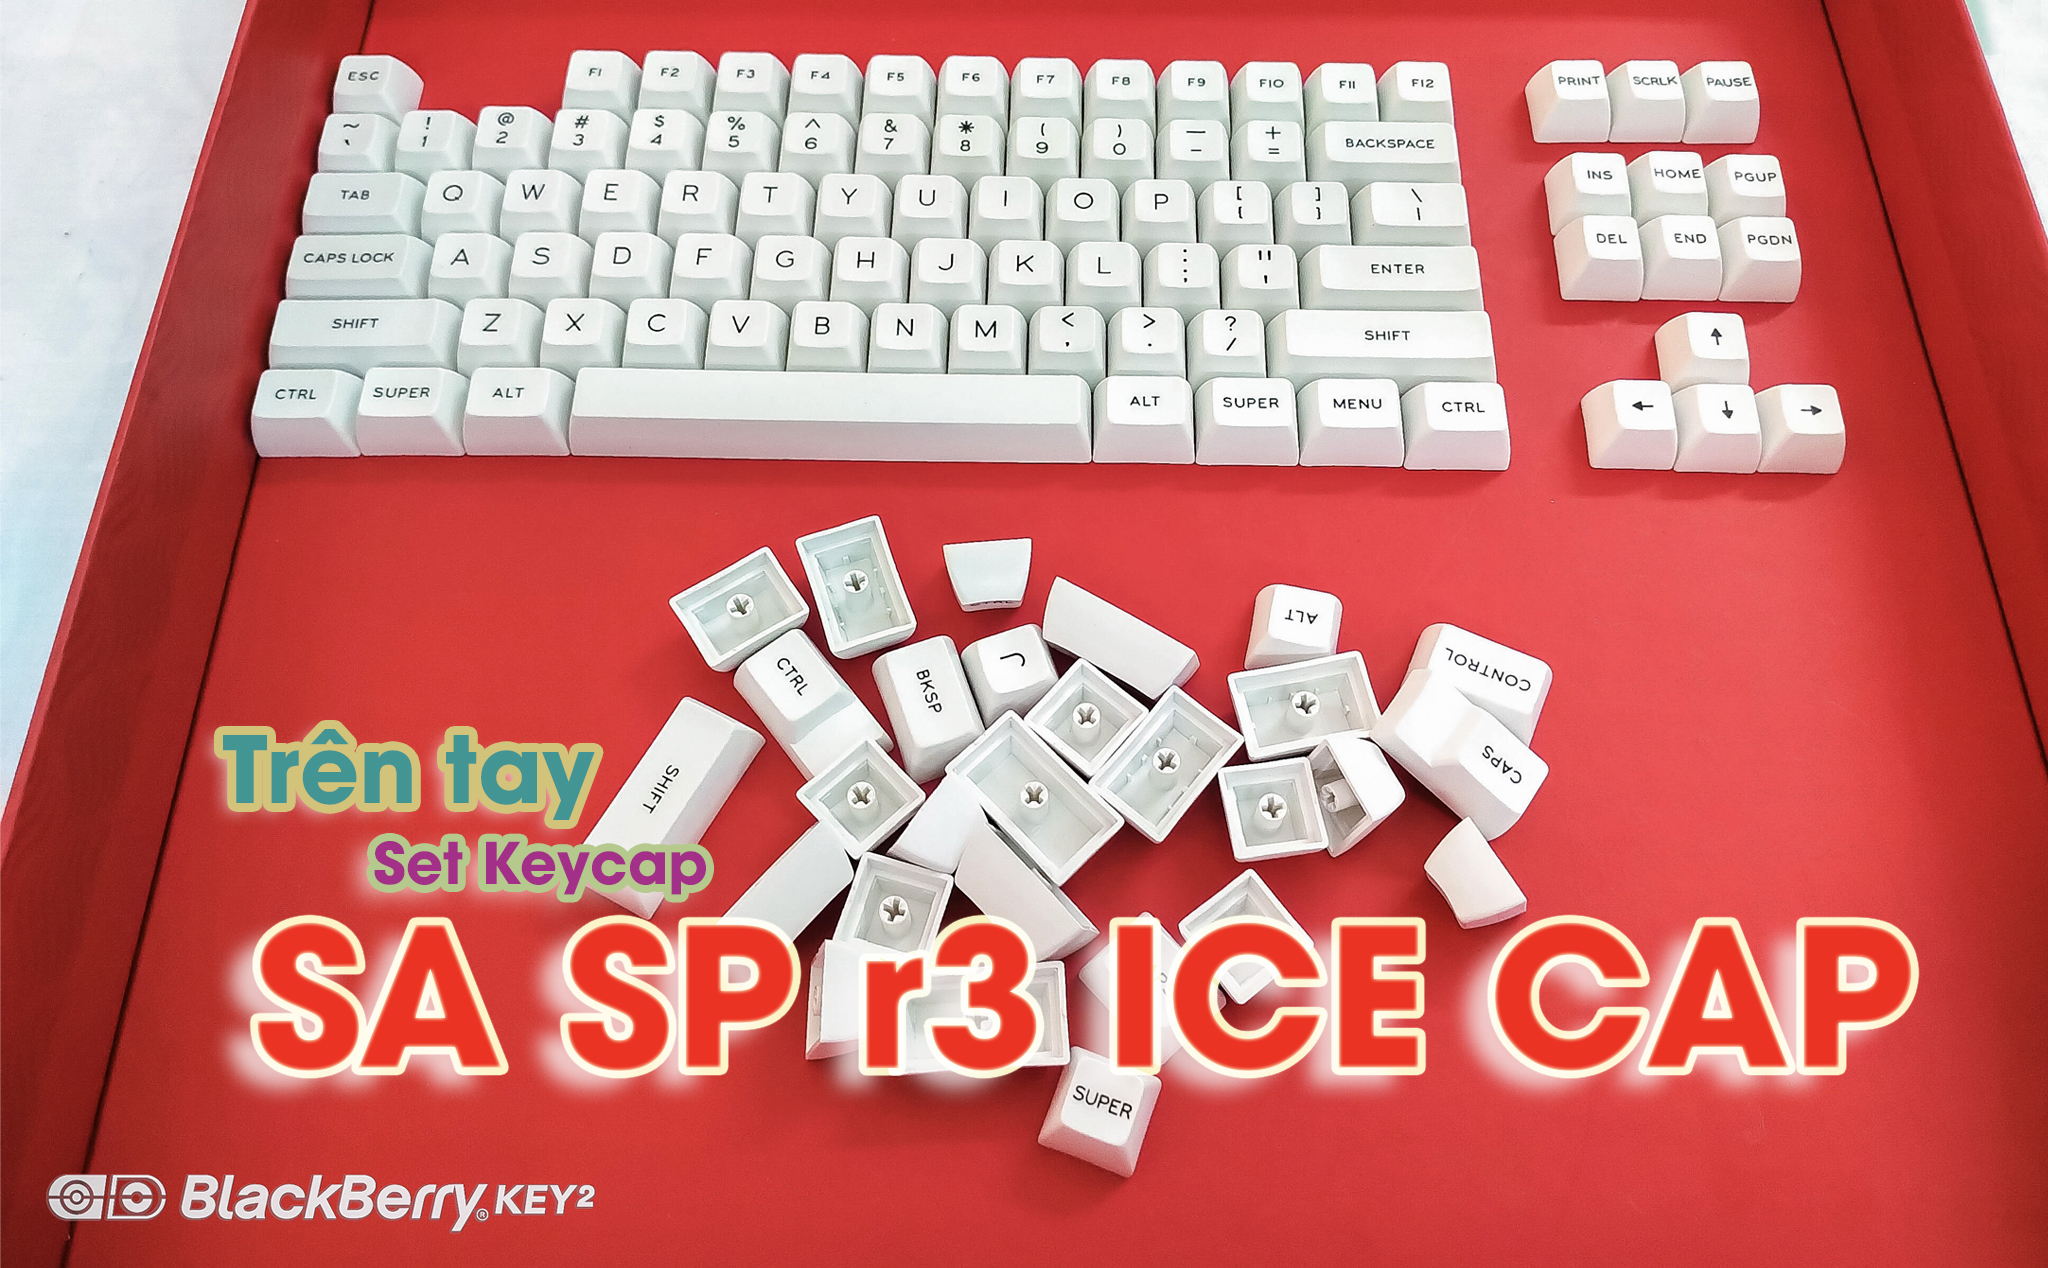 Review keycap SA SP r3 Ice Cap: đẹp, hiếm, hợp với những người có tâm hồn trong sáng, hướng thiện